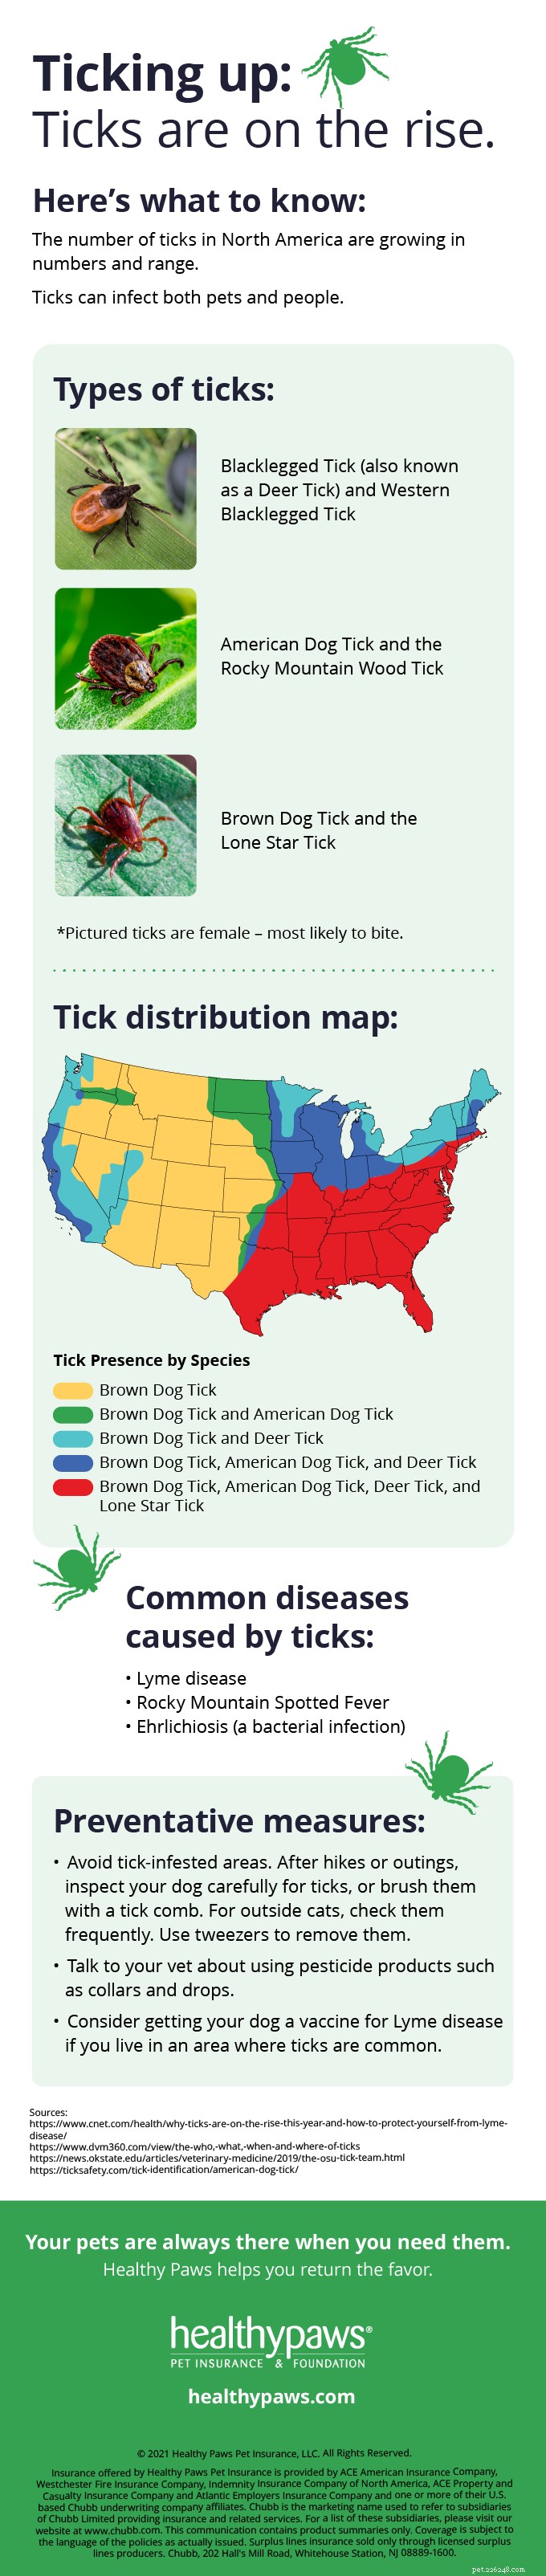 Tick-Borne Disease en uw hond